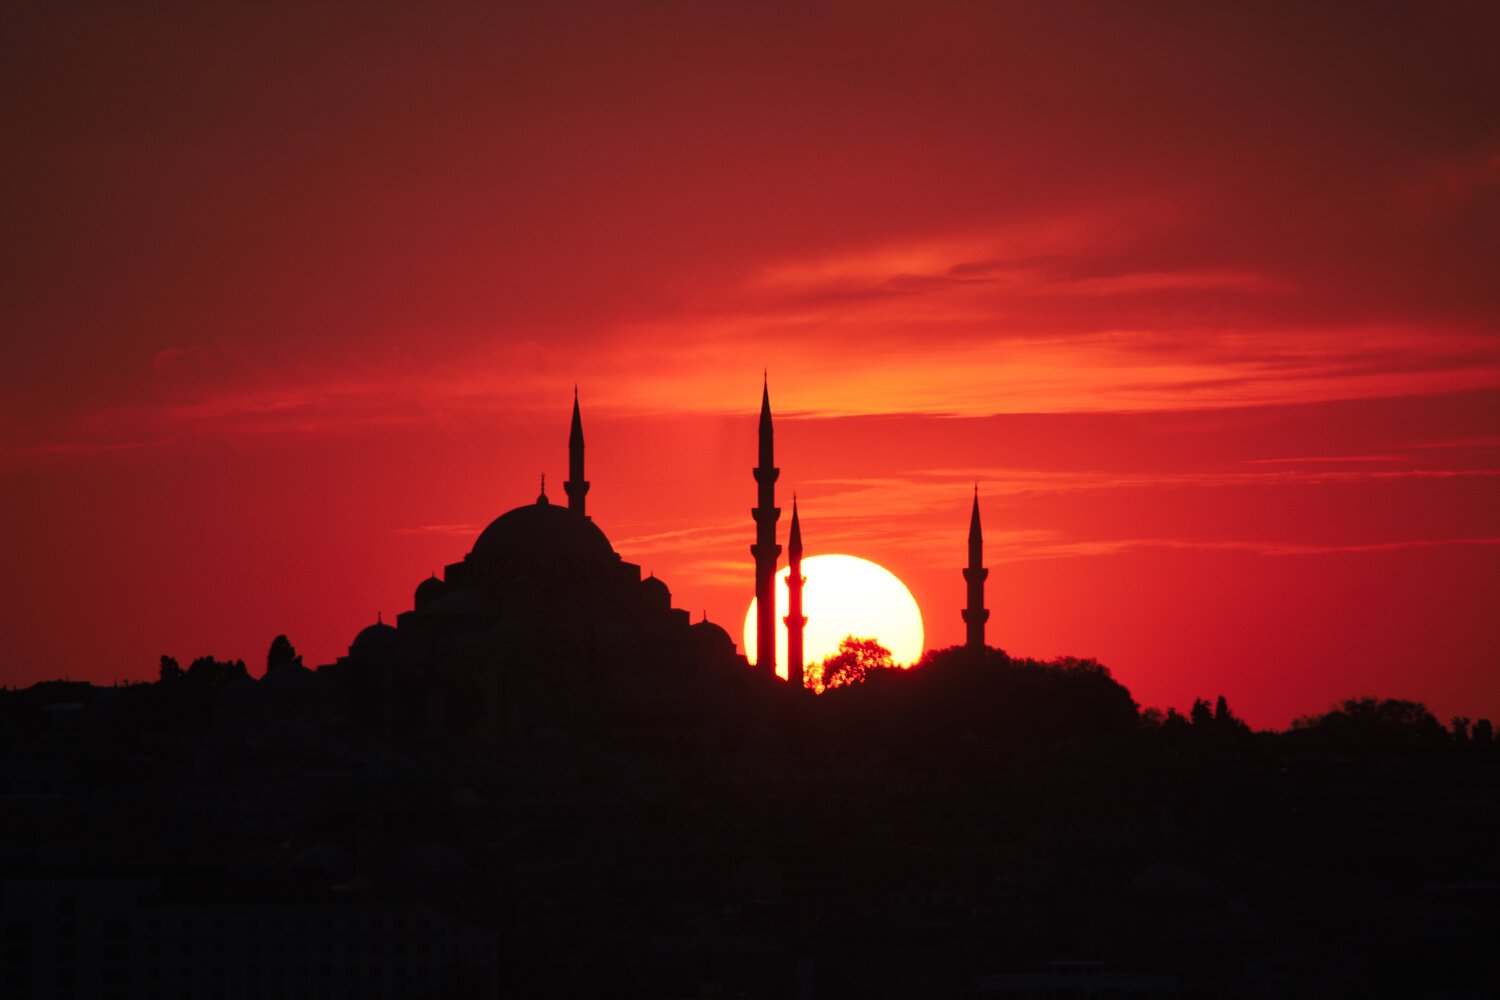 Türkiye'de görülmesi gereken yerler